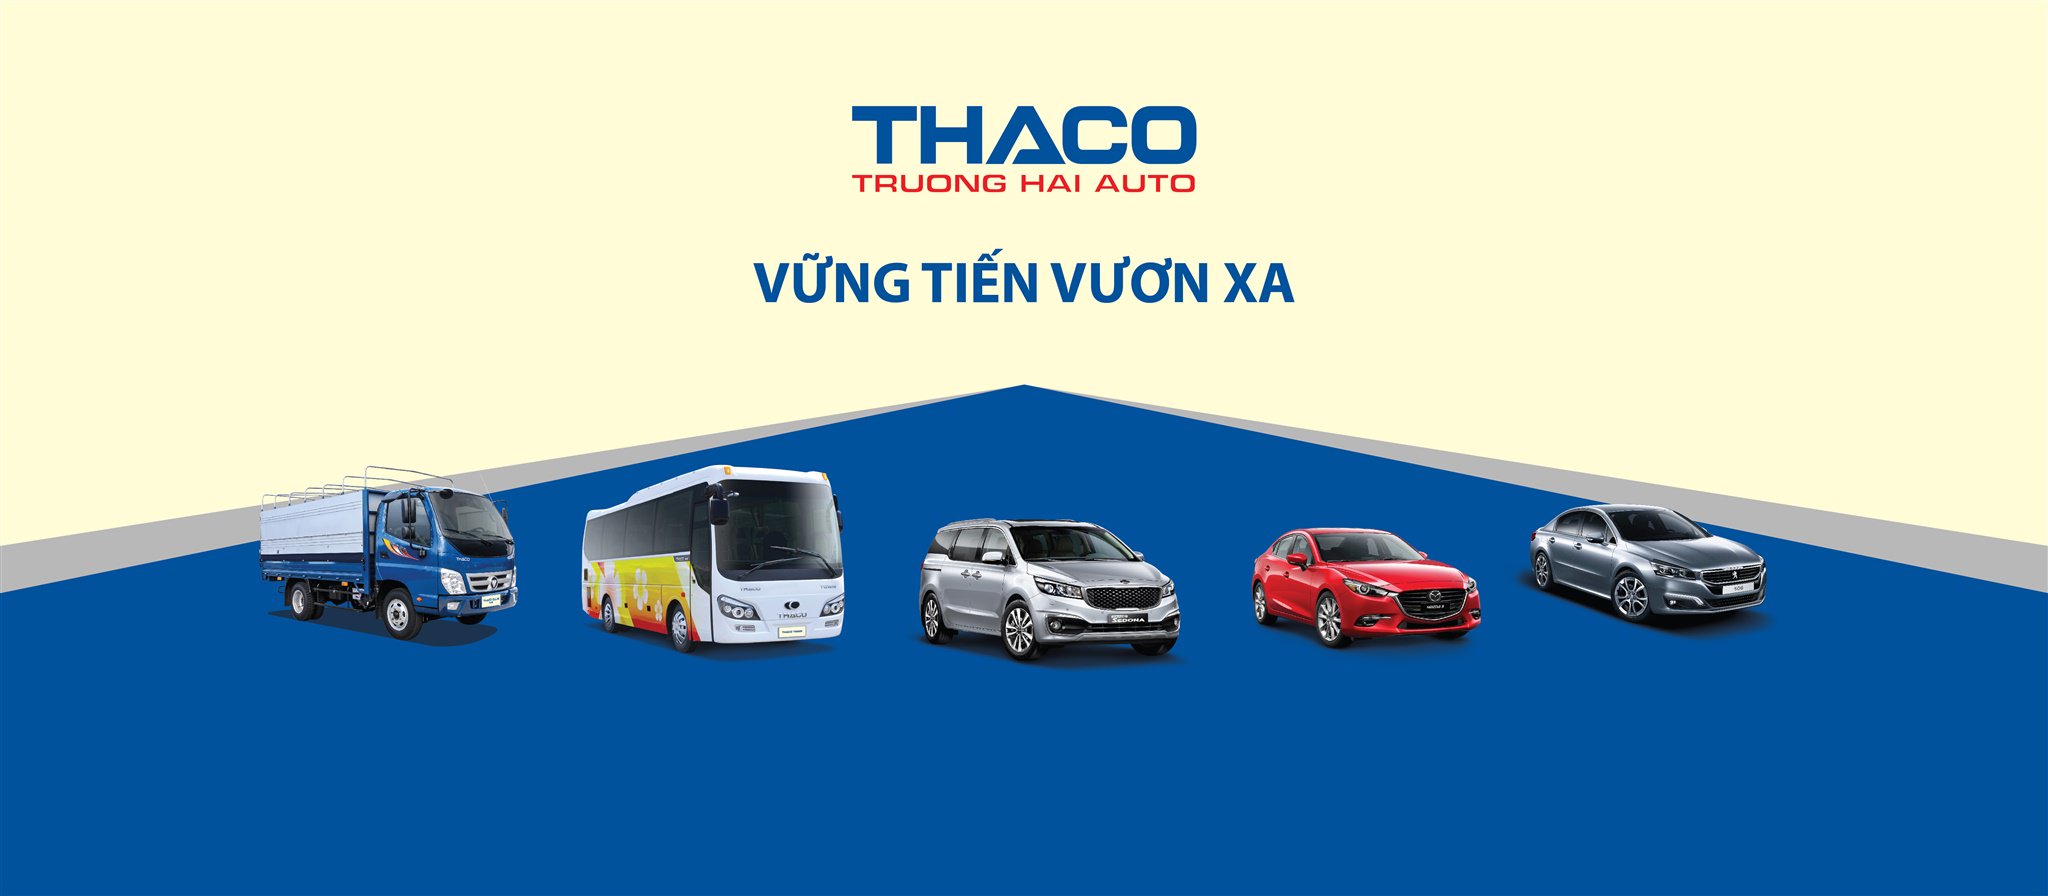 Xe tải Thaco được thiết kế để vận chuyển hàng hoá nhanh chóng và an toàn. Sản phẩm của thương hiệu Thaco nổi tiếng với độ bền cao và khả năng vận hành ổn định, mang đến sự hiệu quả và tin cậy cho người dùng.